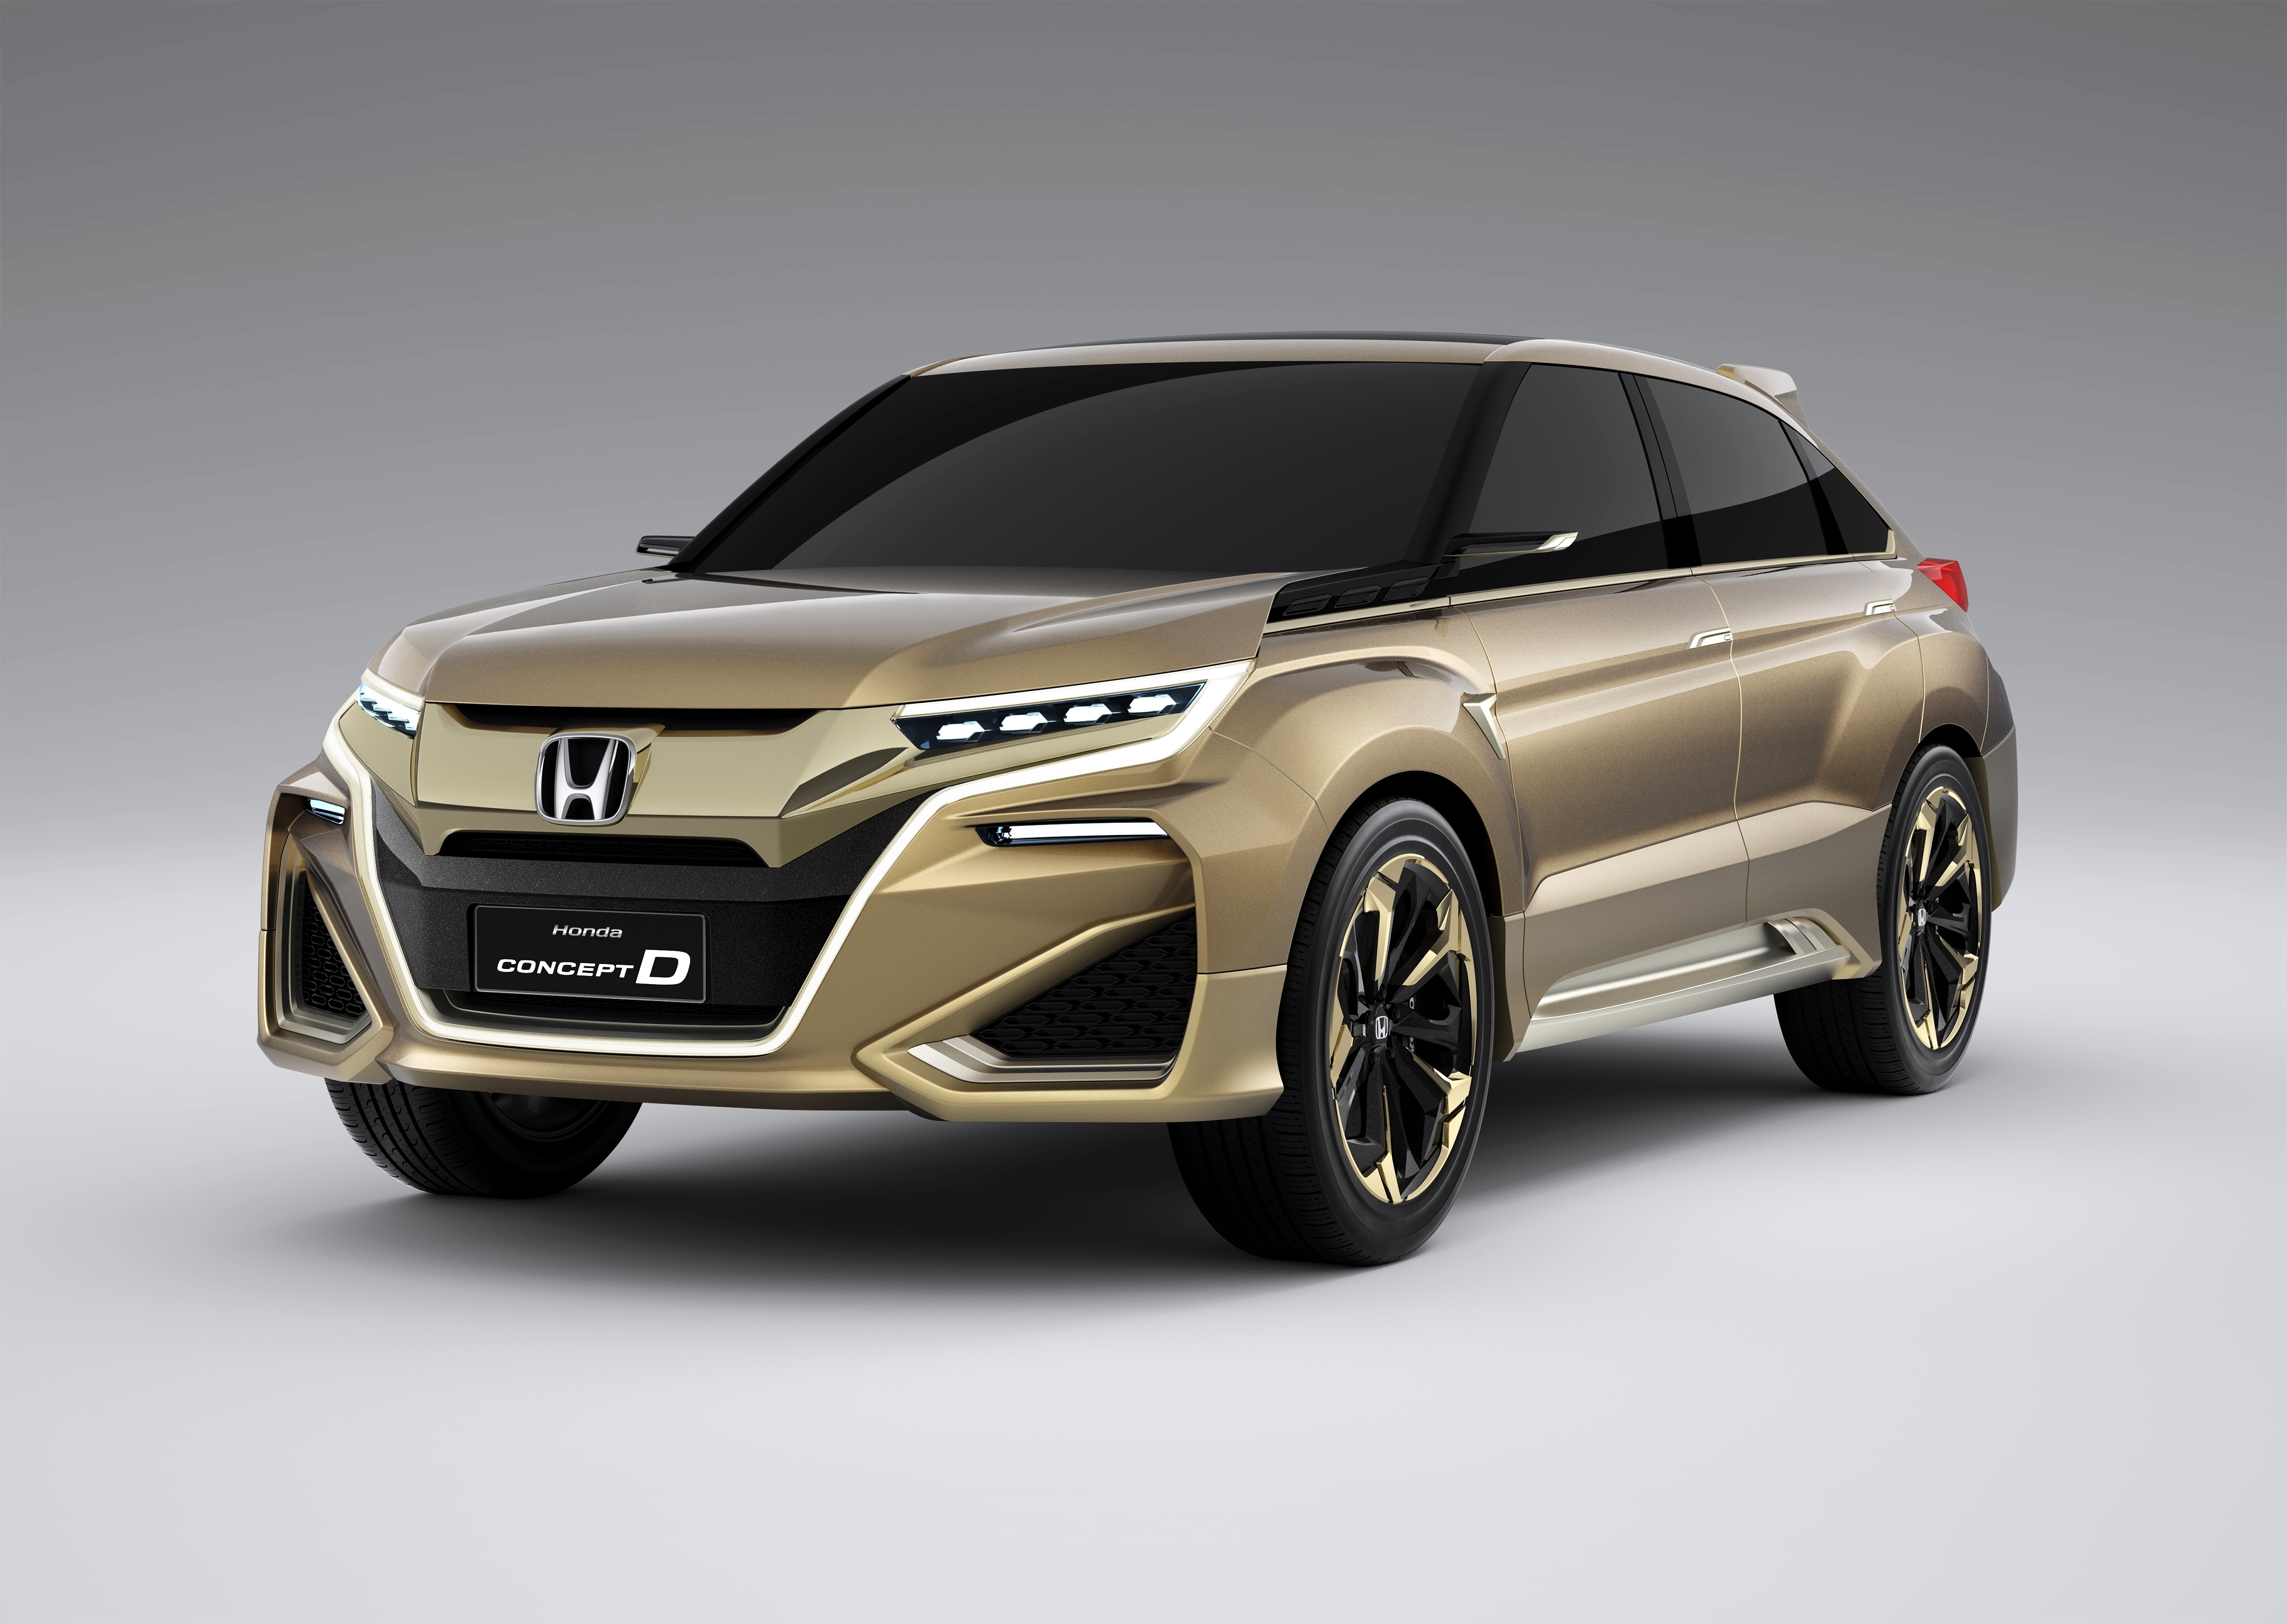 Honda Concept D Honda Concept Car 4x4 Car Vehicle 4096x2909